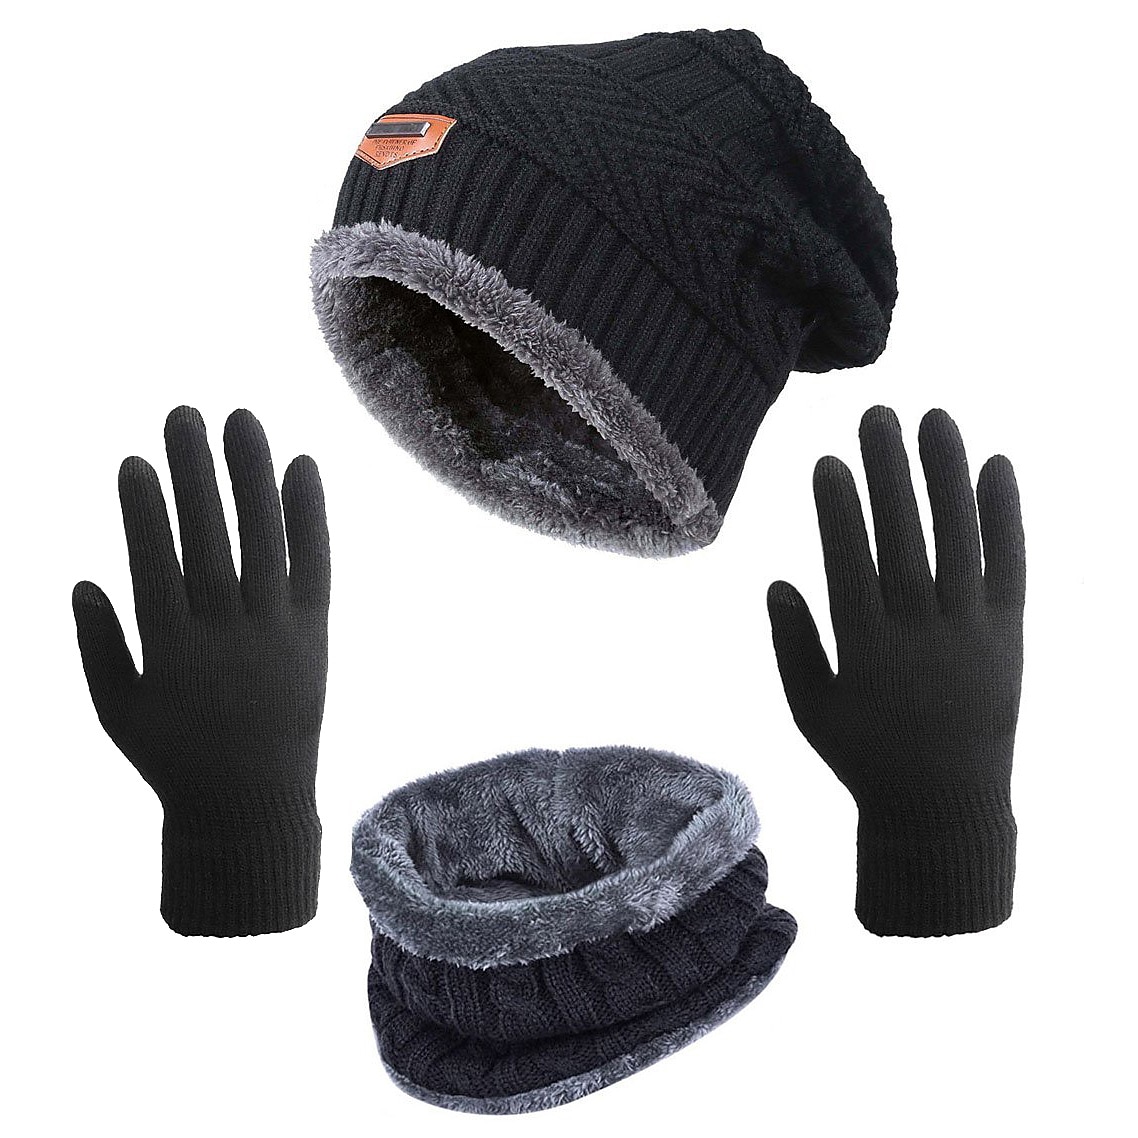 Printrendy Unisex Hat Scarf Glove Set